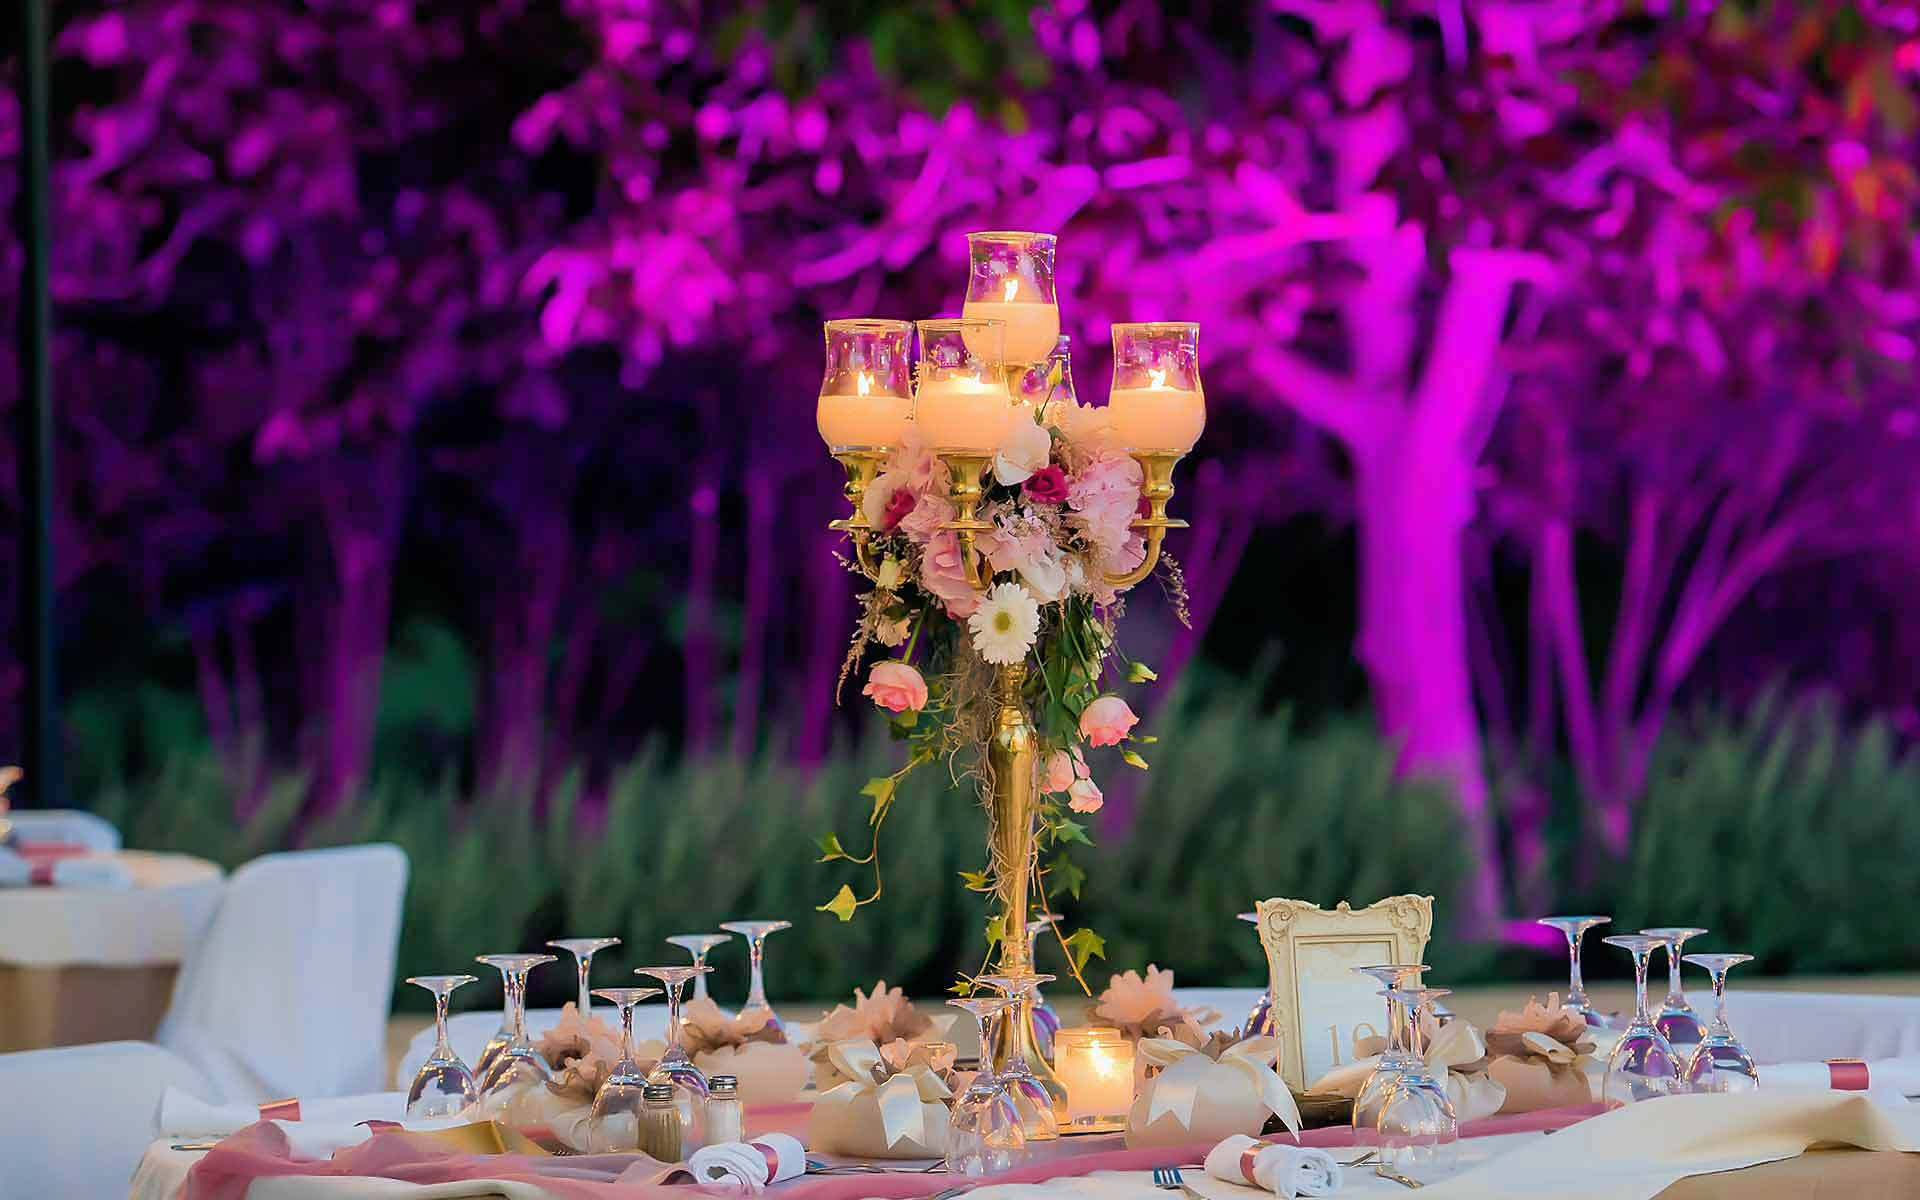 A tall gold candelabra & a stunning floral bouquet provides an elegant wedding centerpiece